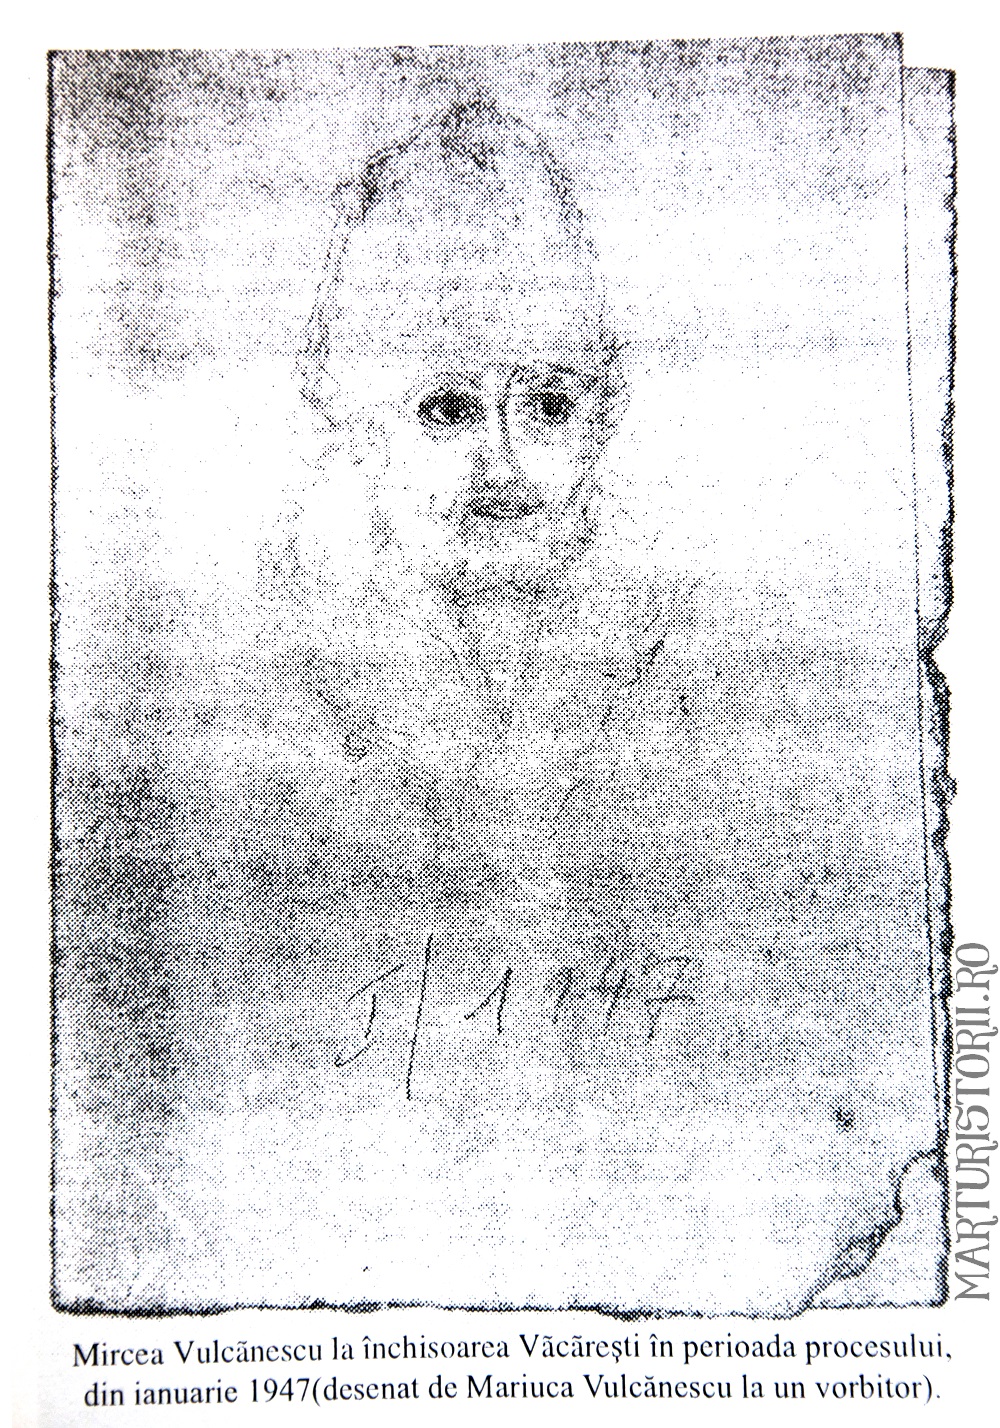 Mircea Vulcanescu in temnita desenat de fiica sa Mariuca Vulcanescu - Marturisitorii Ro